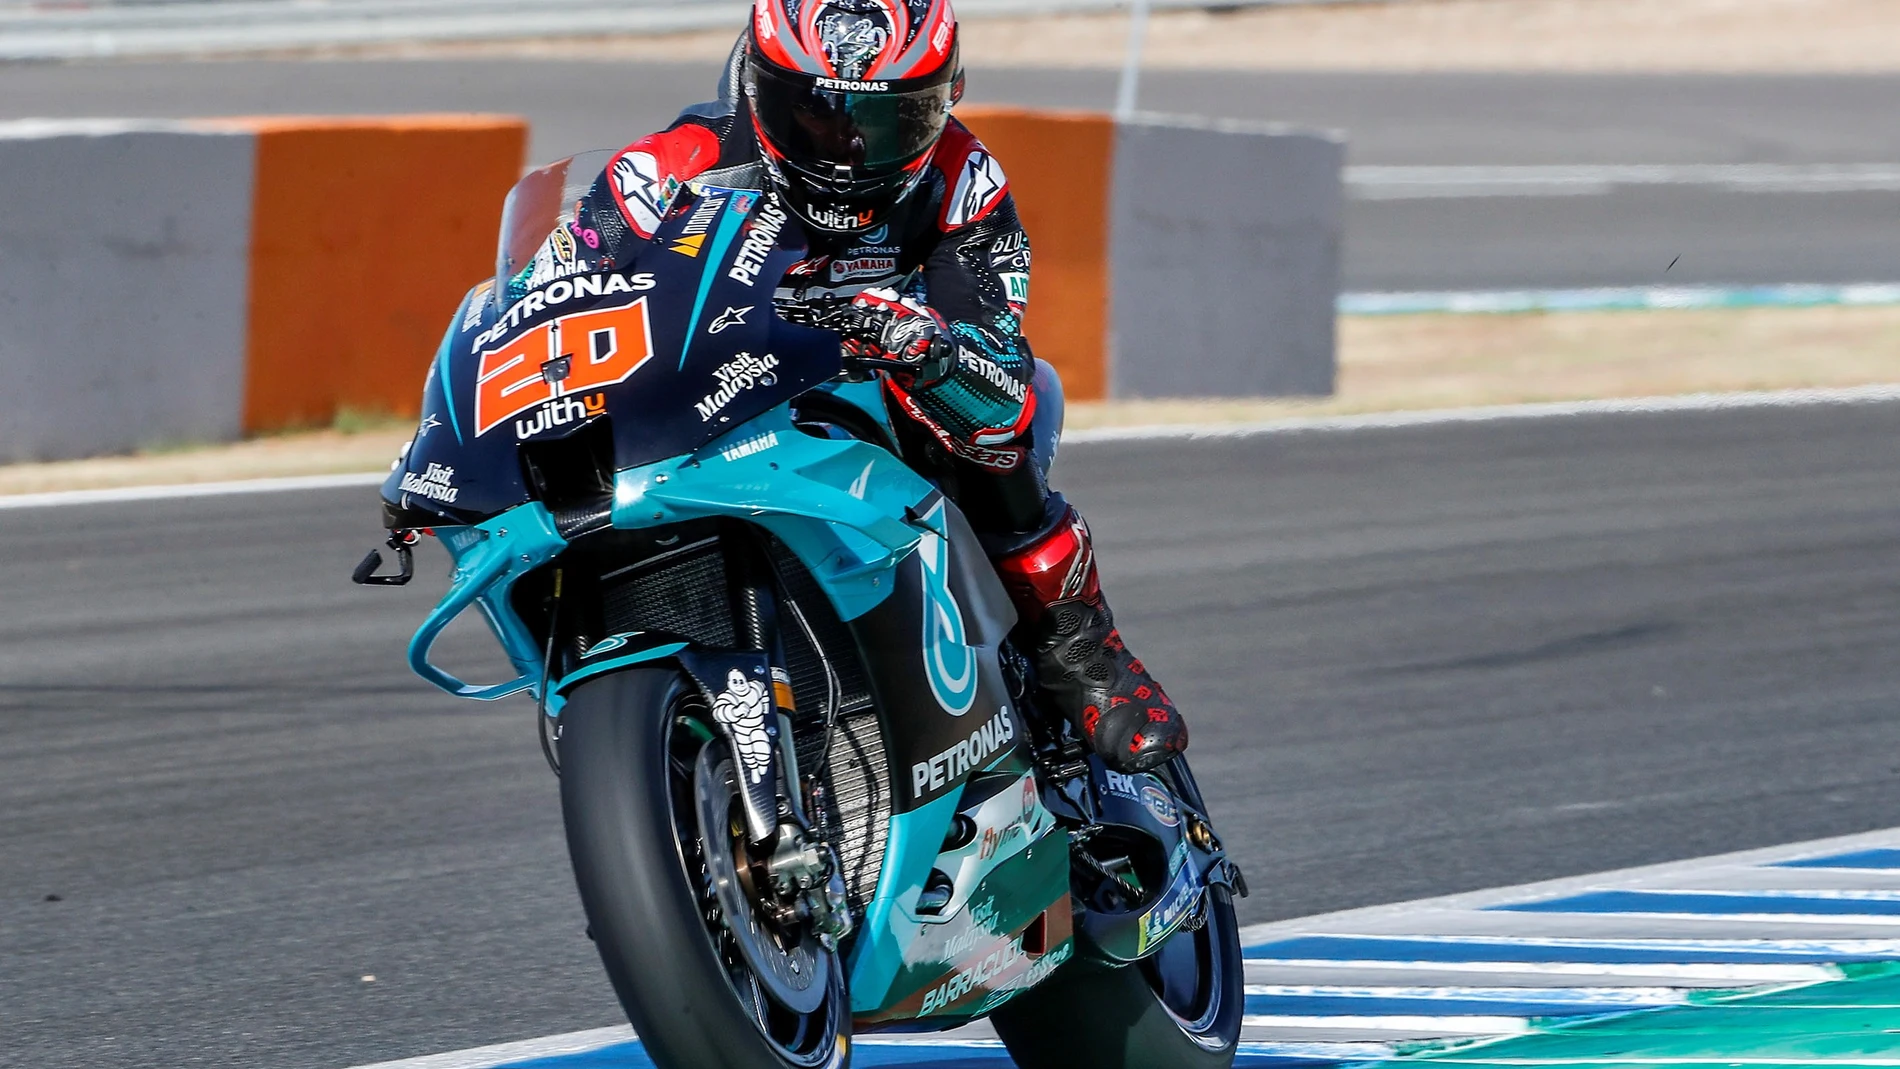 Segundo día entrenamientos libres MotoGP en Circuito de Jerez